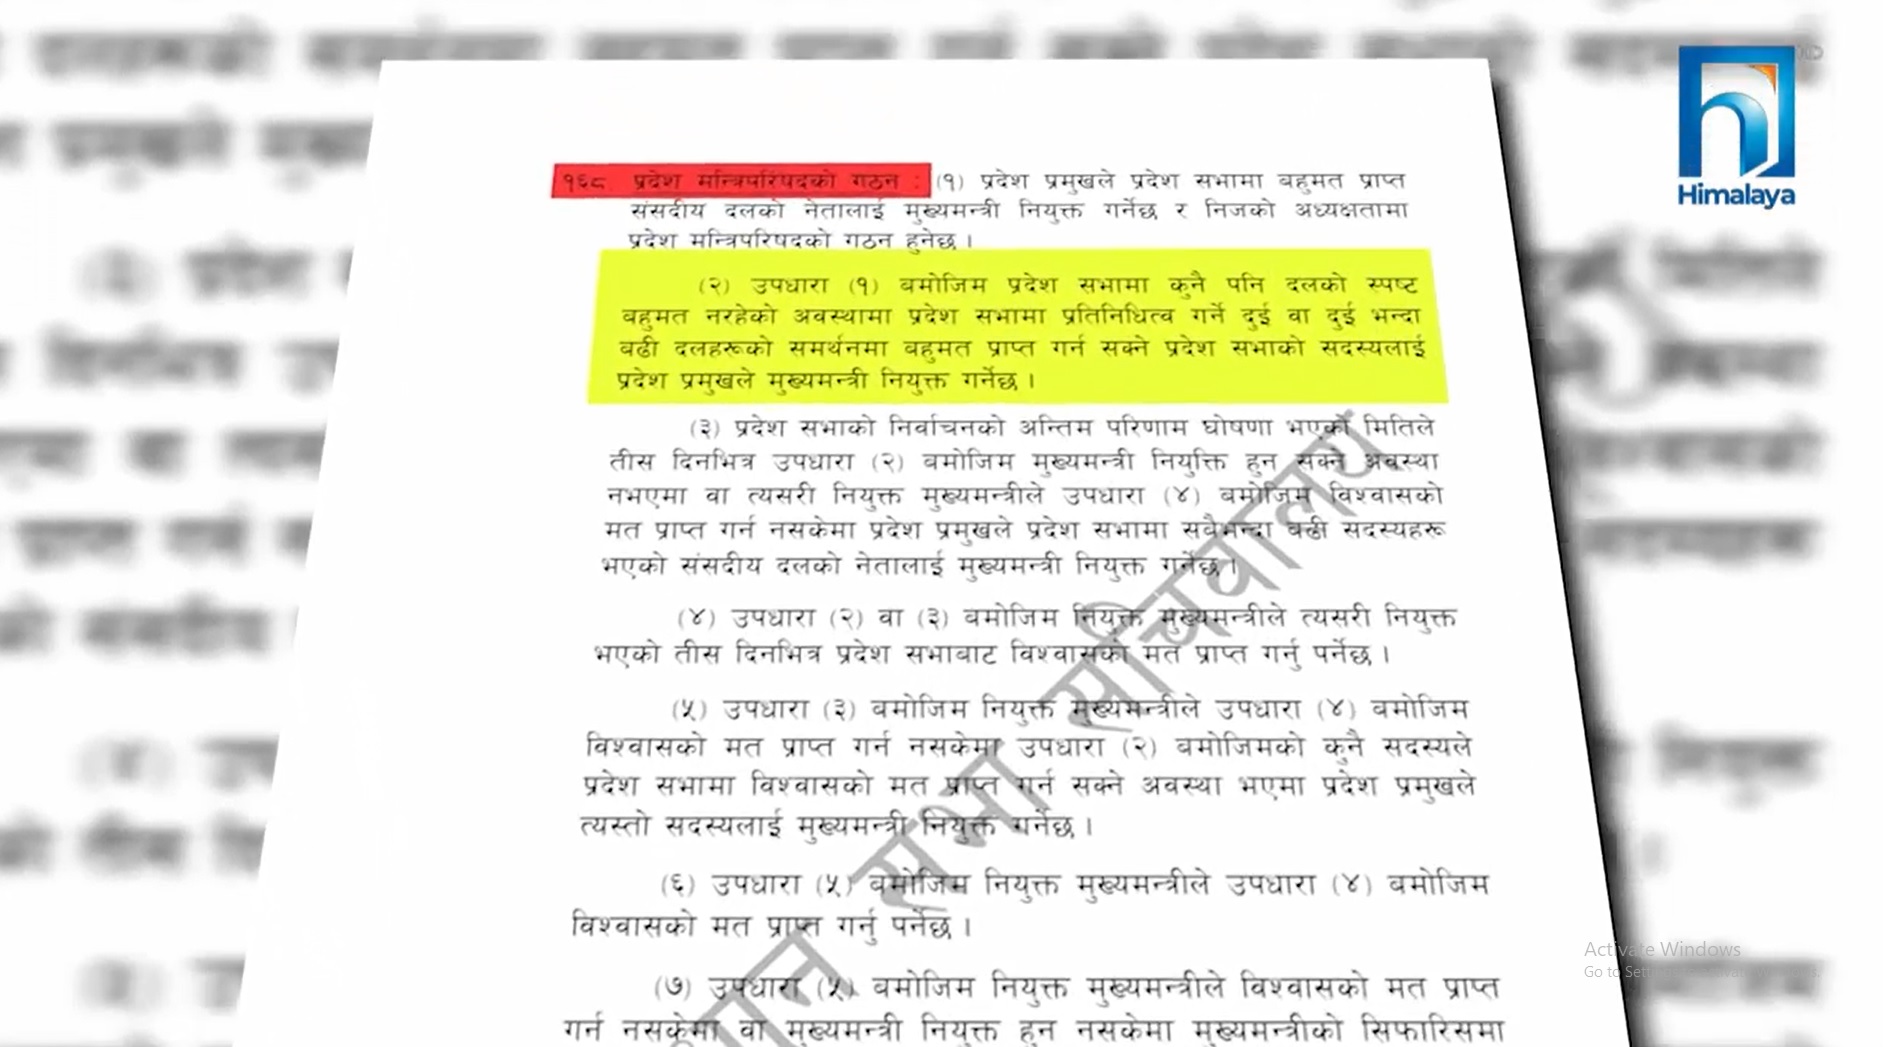 गण्डकी र लुम्बिनी संविधानको अपव्याख्या (भिडियो रिपोर्टसहित)